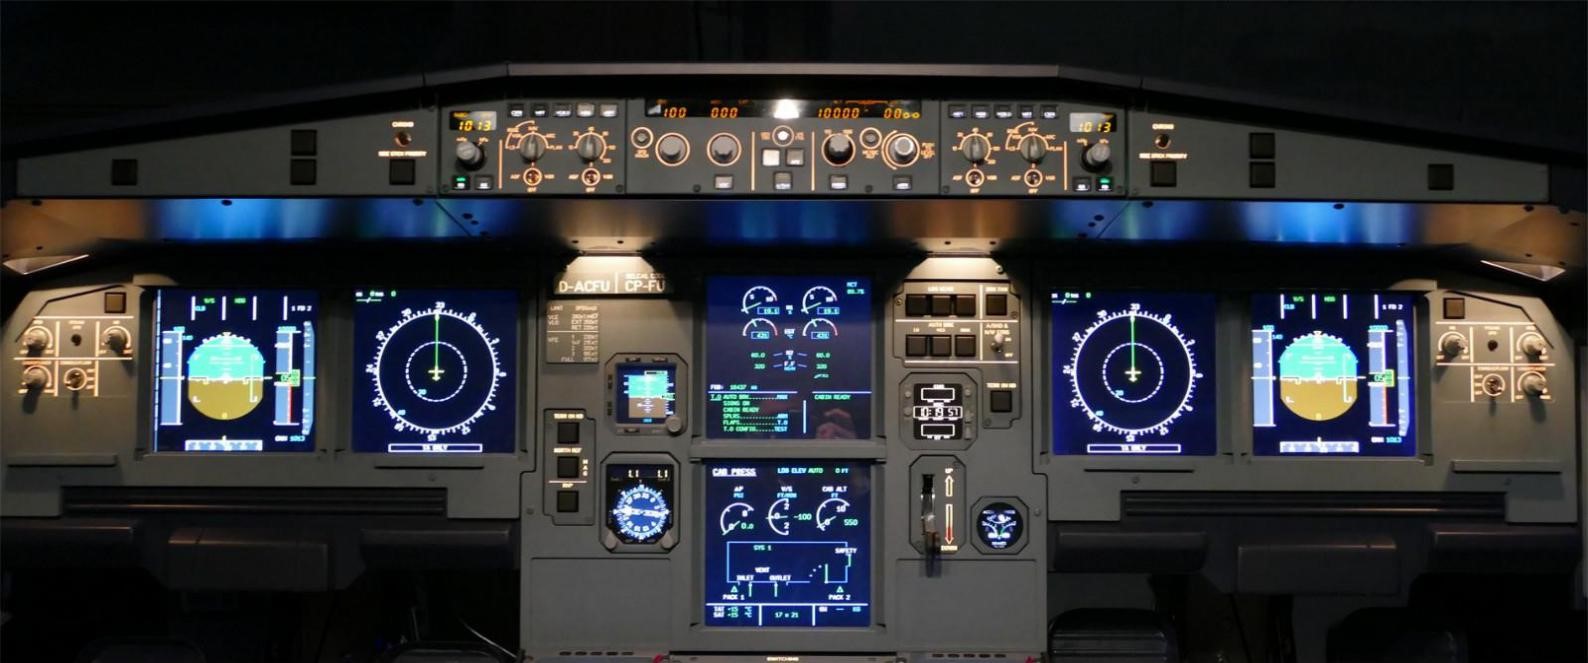 飞行者联盟空客A320模拟舱 整舱产品发布！-4084 